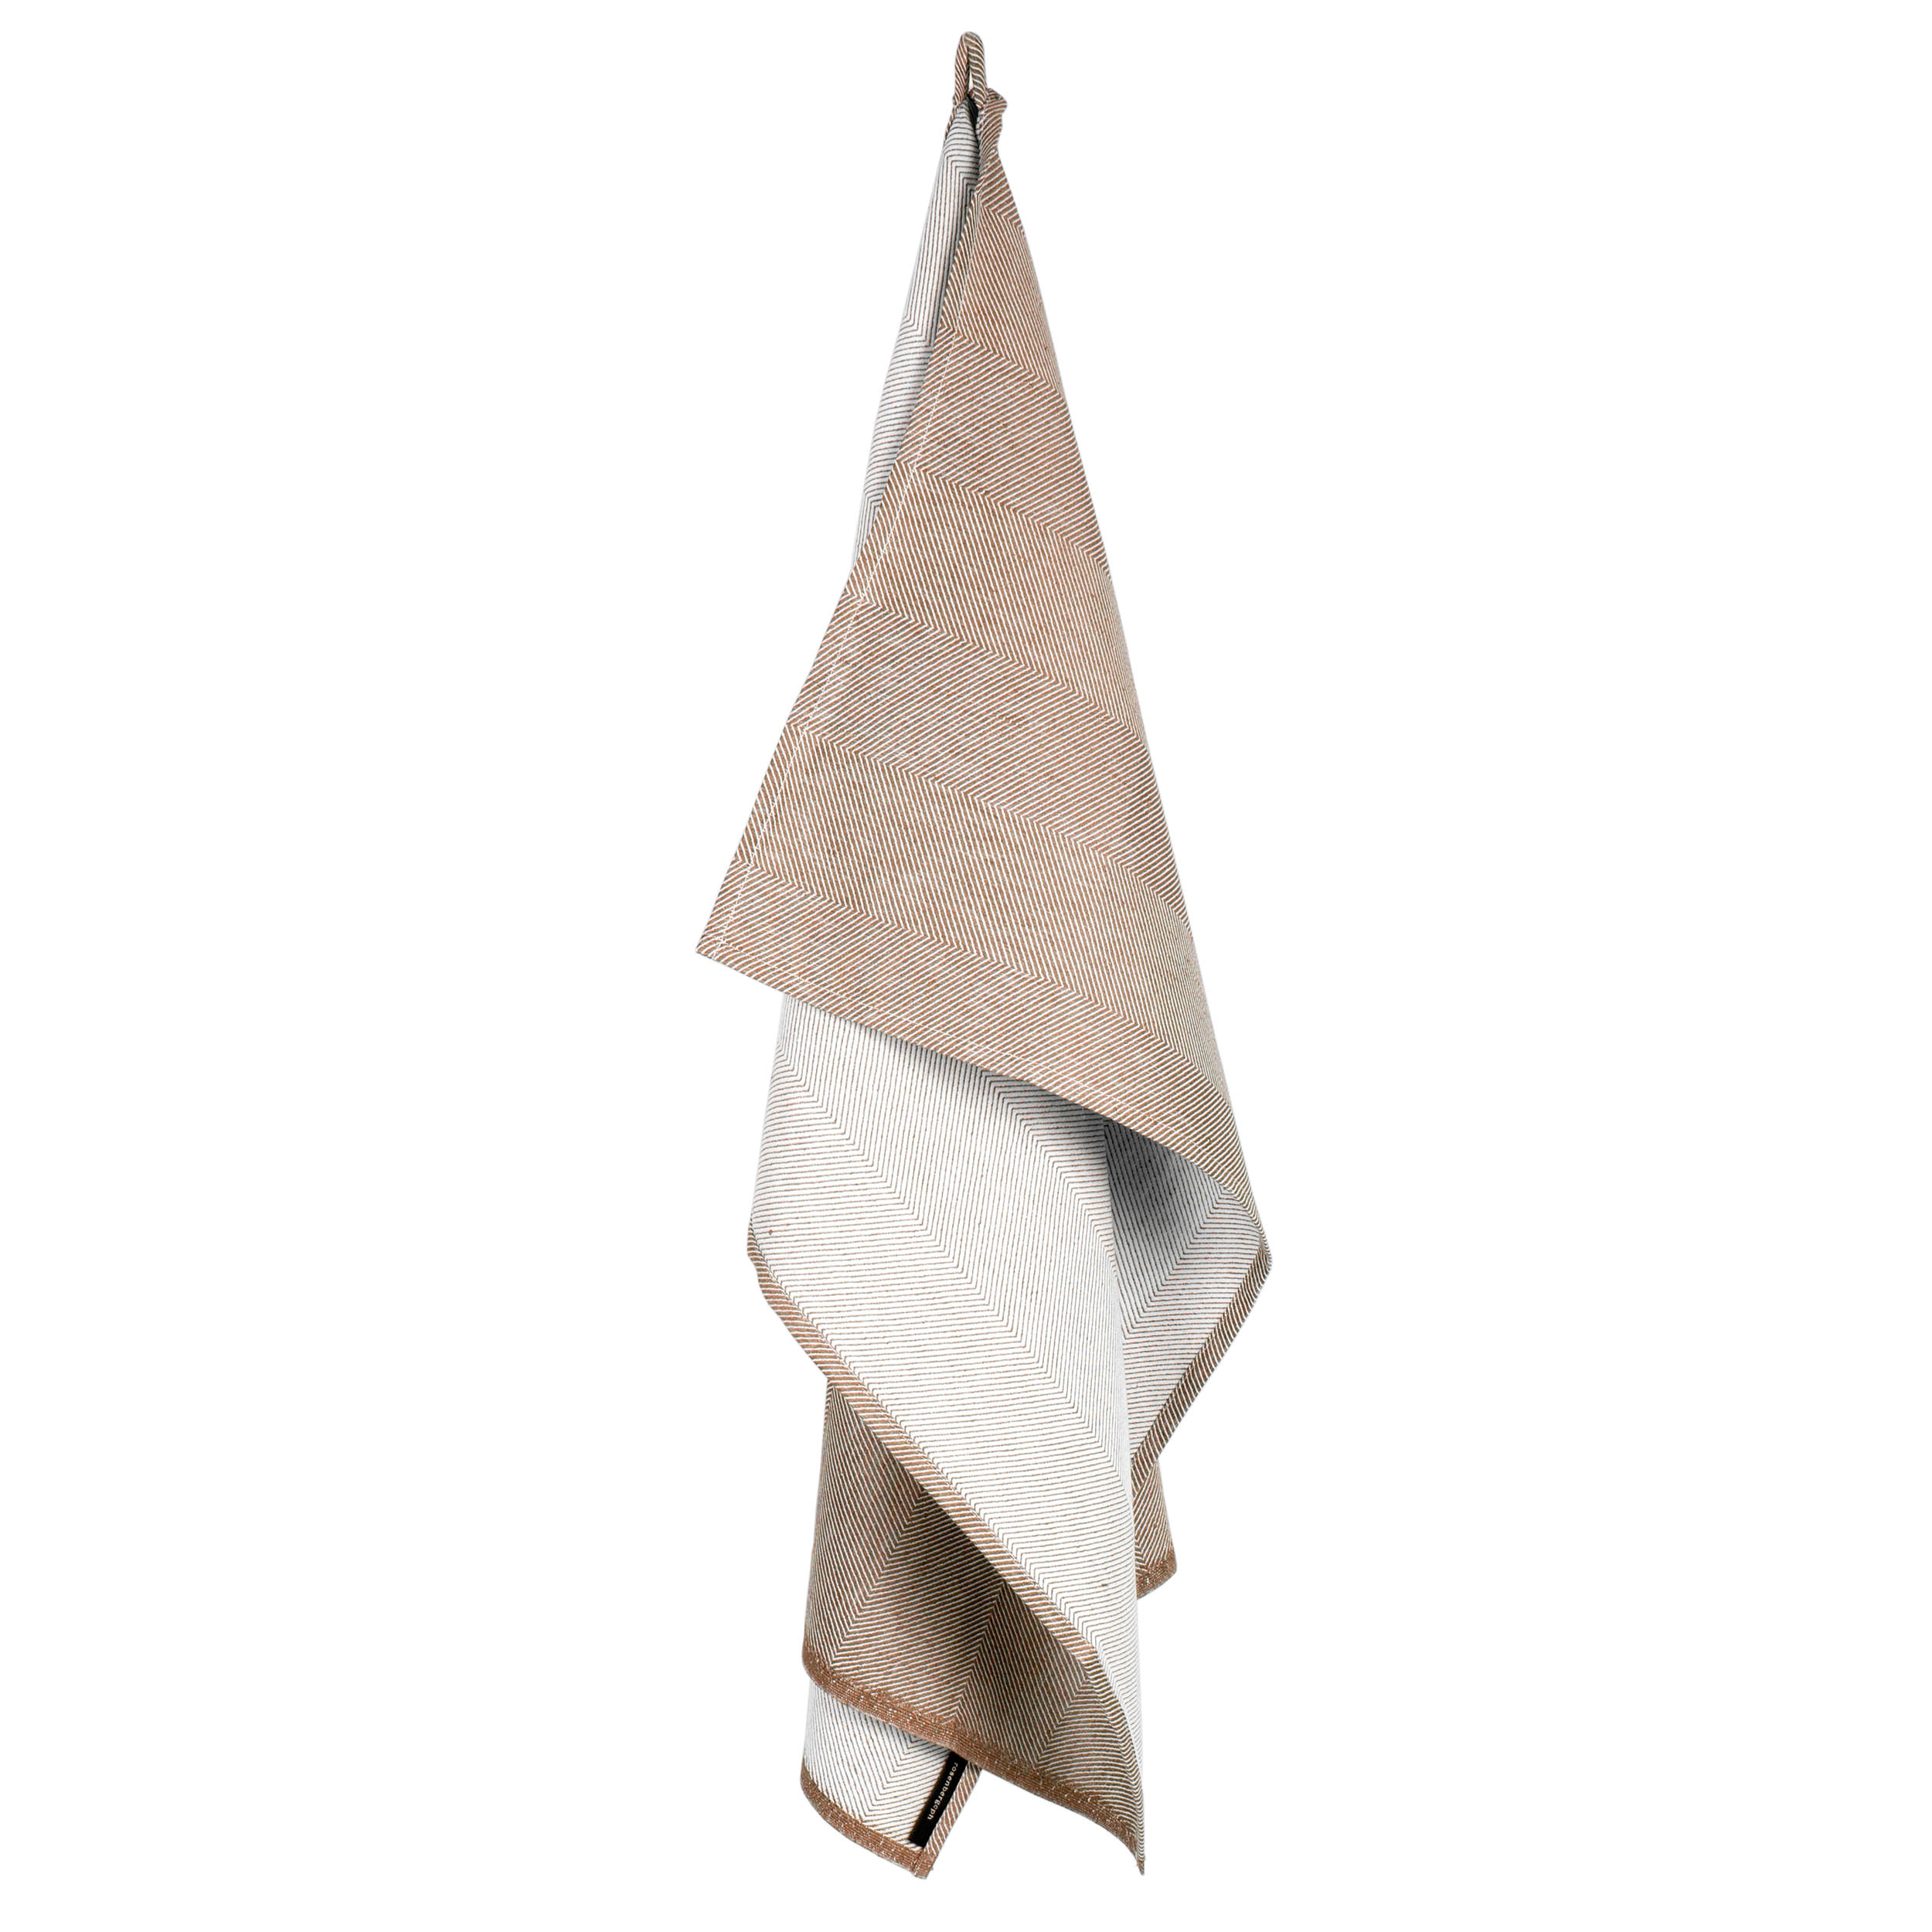 Towel, Almond, linen/cotton, design by Anne Rosenberg, RosenbergCph